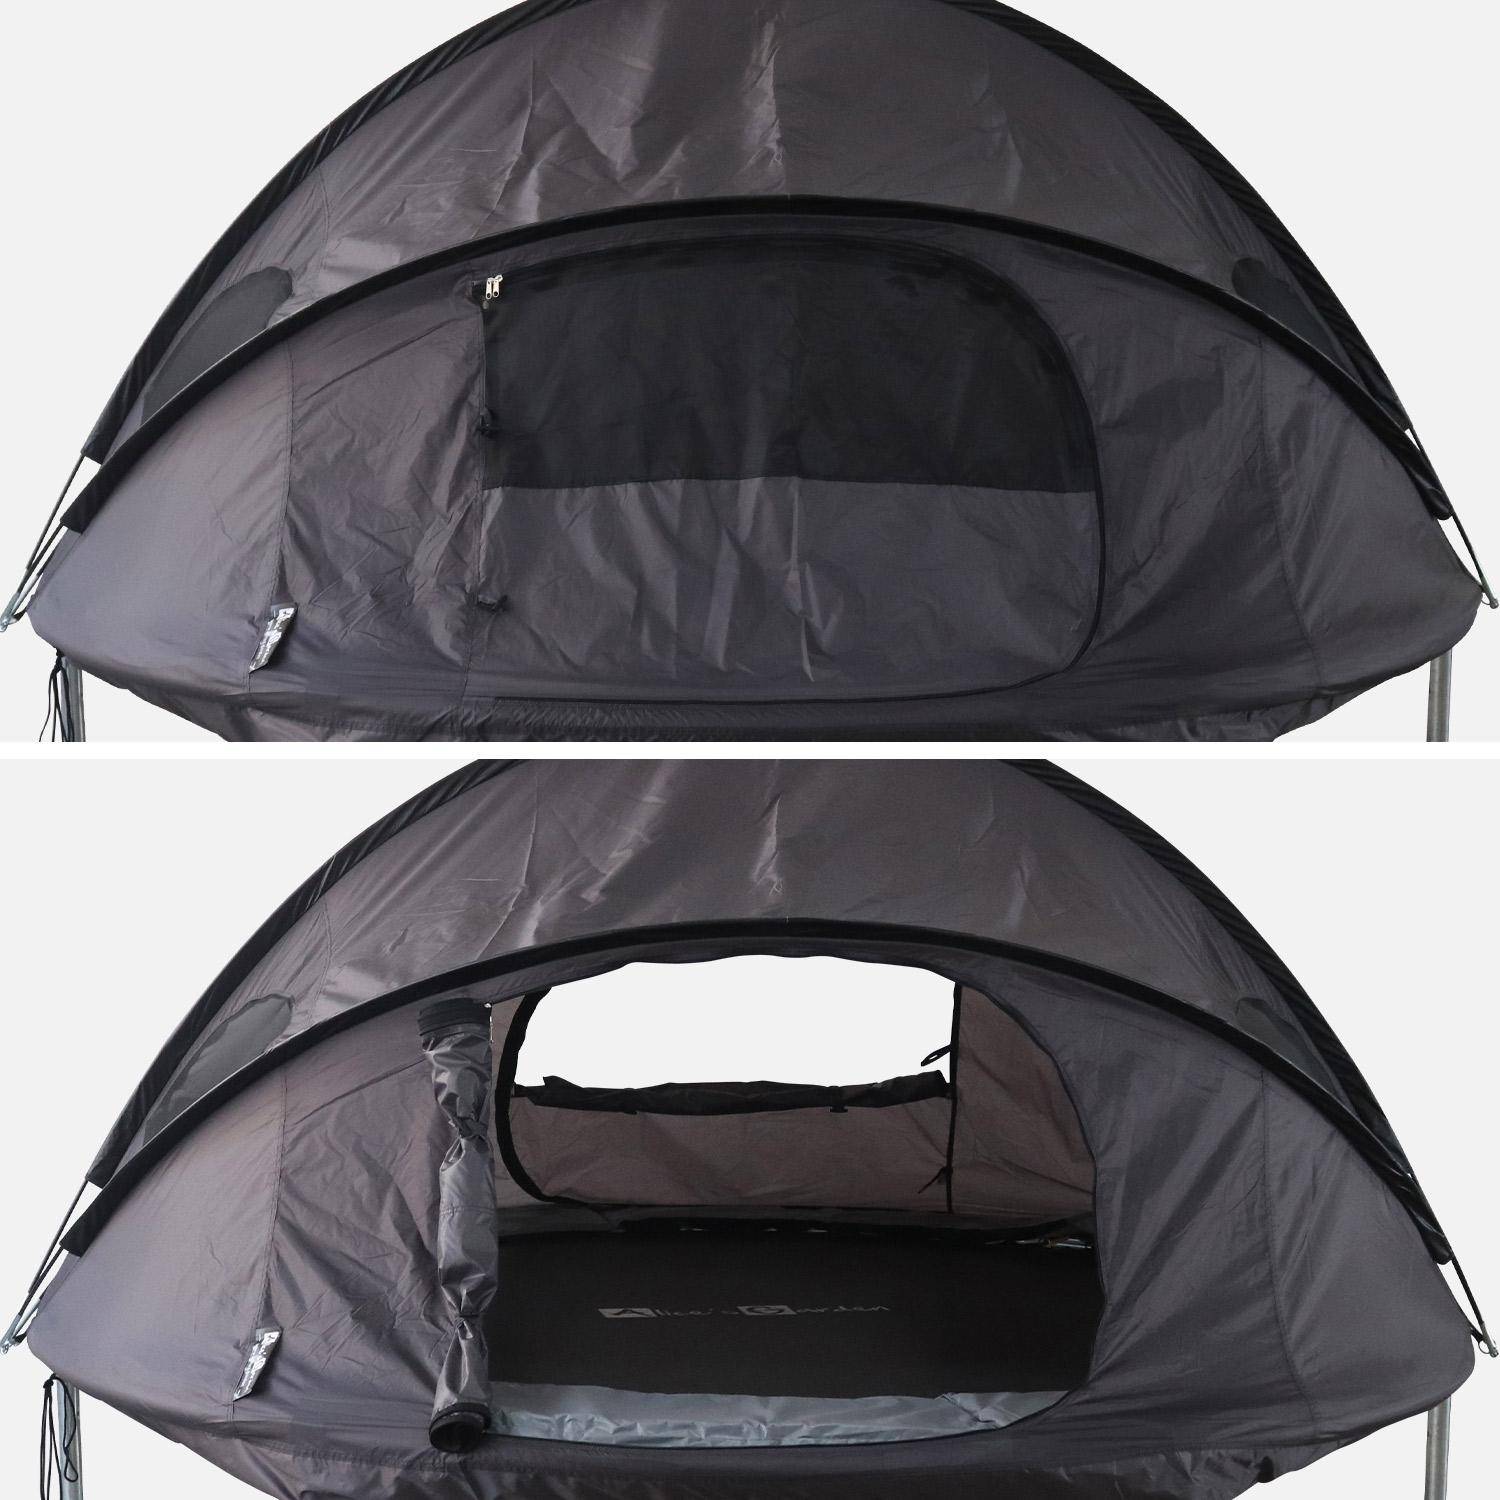 Carpa para cama elástica Ø250cm (red interior y exterior) poliéster, tratamiento UV, 2 puertas, 4 ventanas y bolsa de transporte,sweeek,Photo3